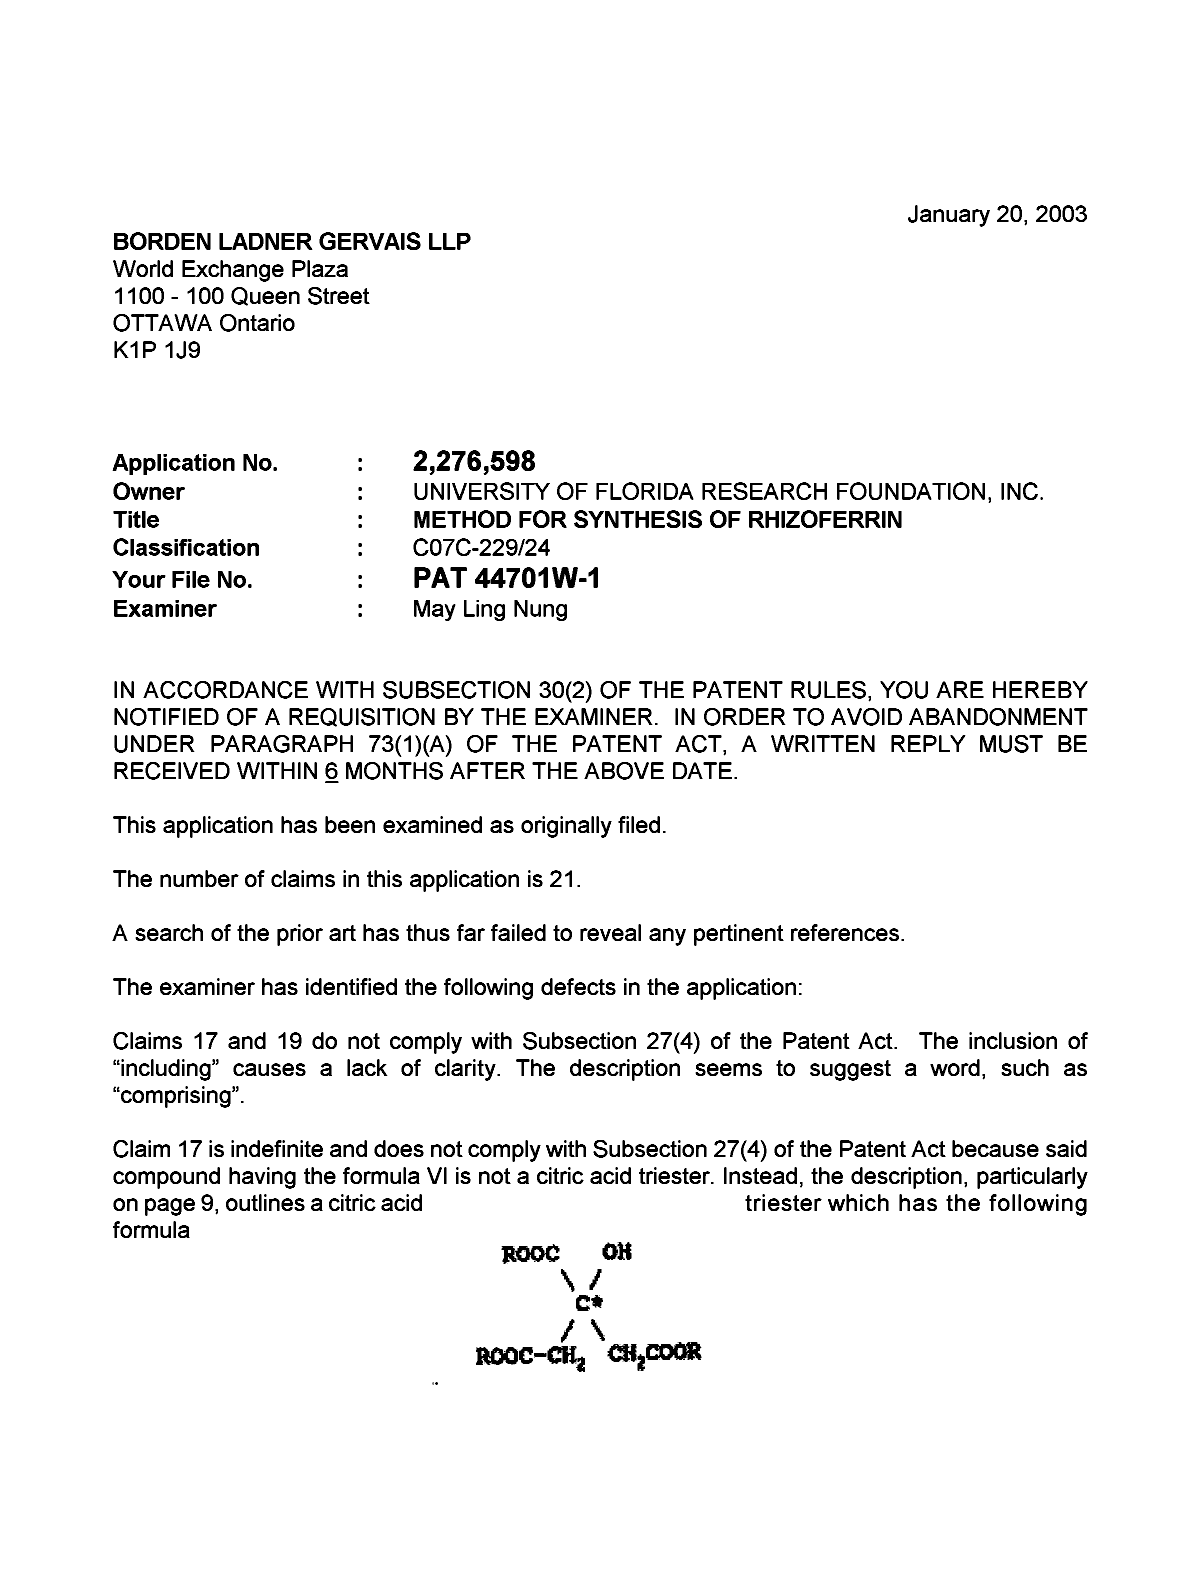 Document de brevet canadien 2276598. Poursuite-Amendment 20030120. Image 1 de 2